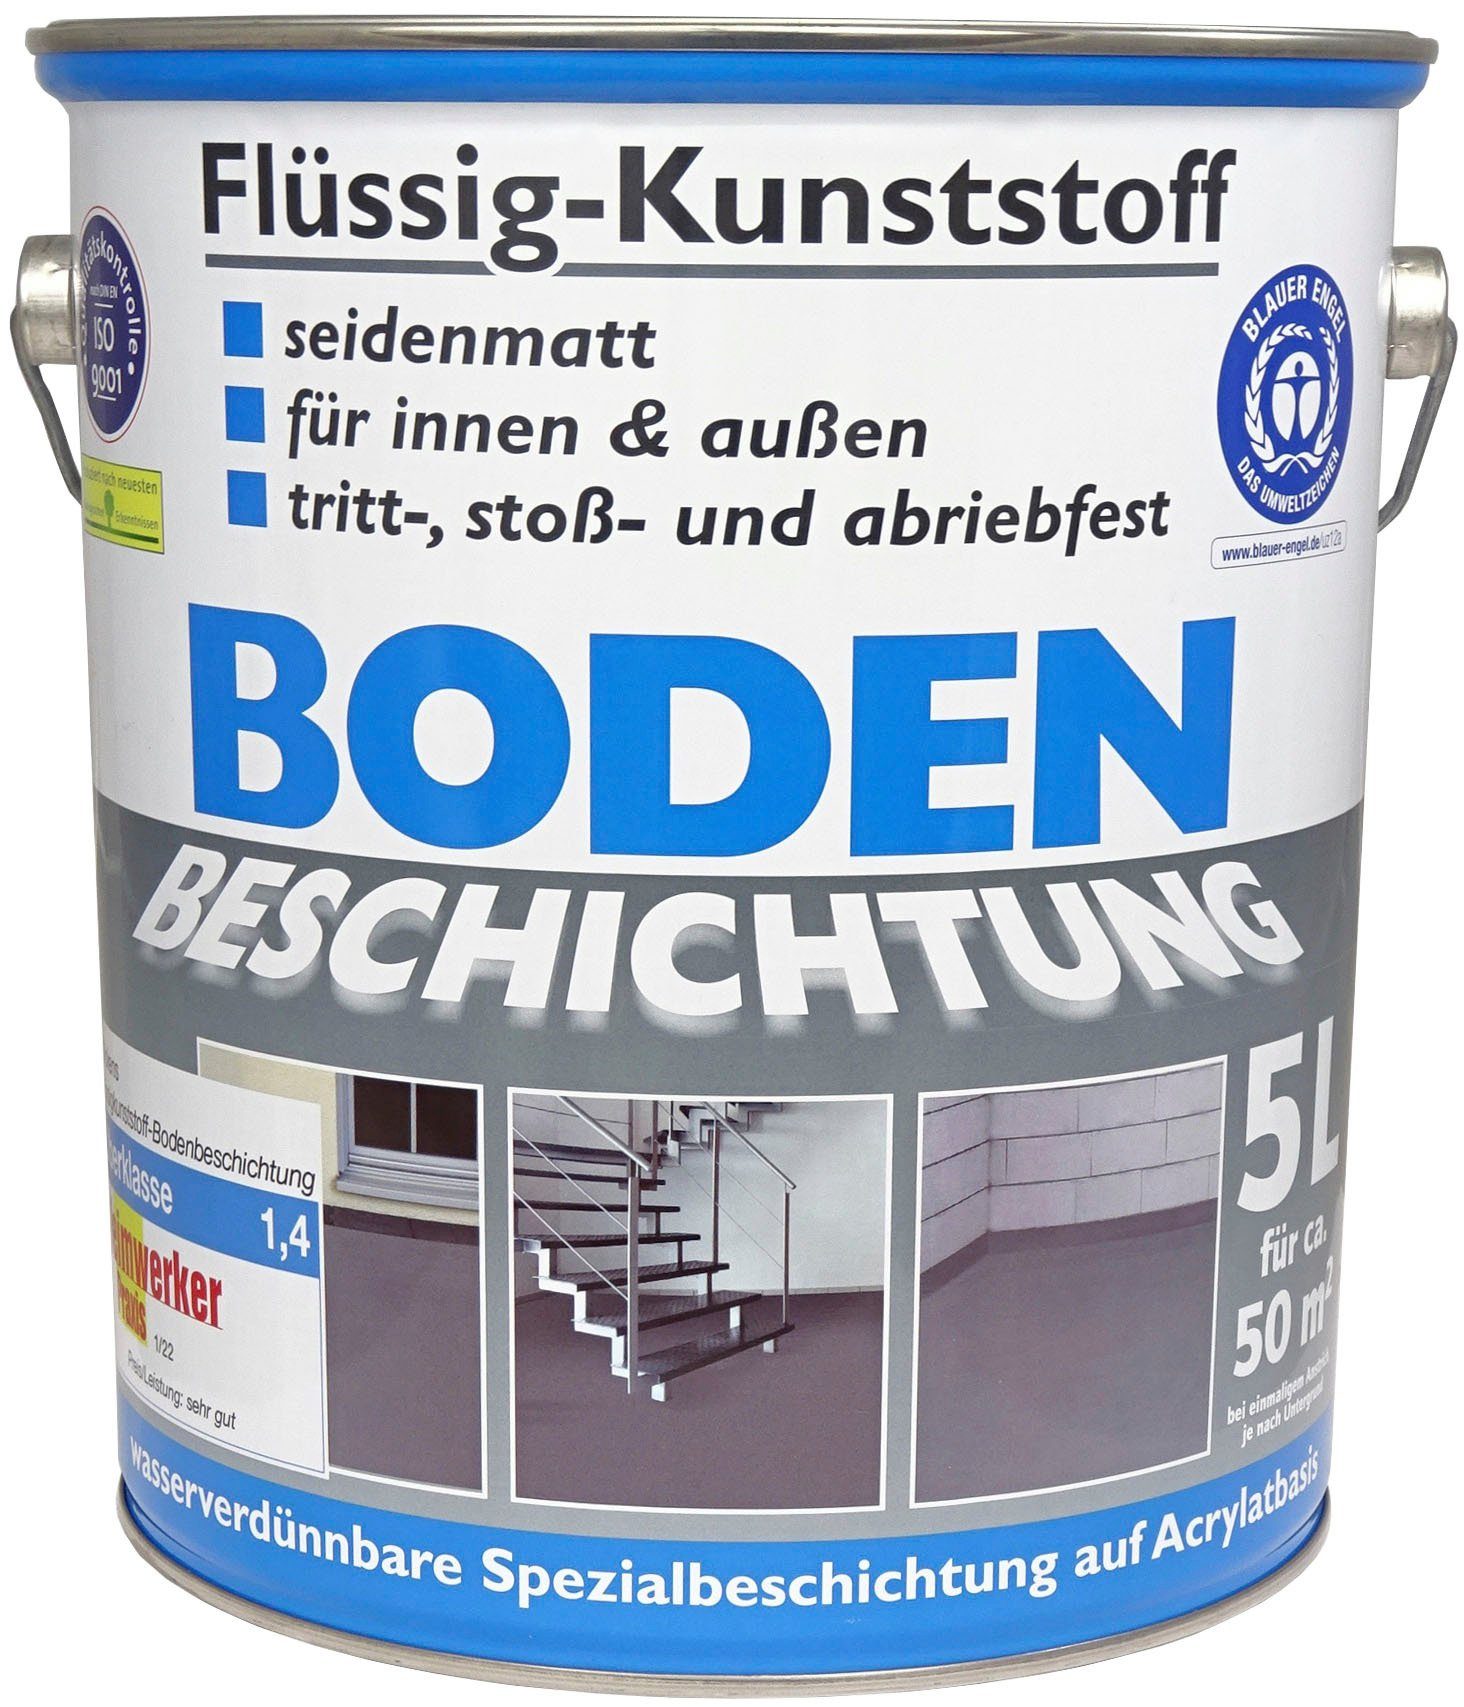 Wilckens Farben Acryl-Flüssigkunststoff Flüssig-Kunststoff Bodenbeschichtung, seidenmatt Reinweiß, RAL 9010